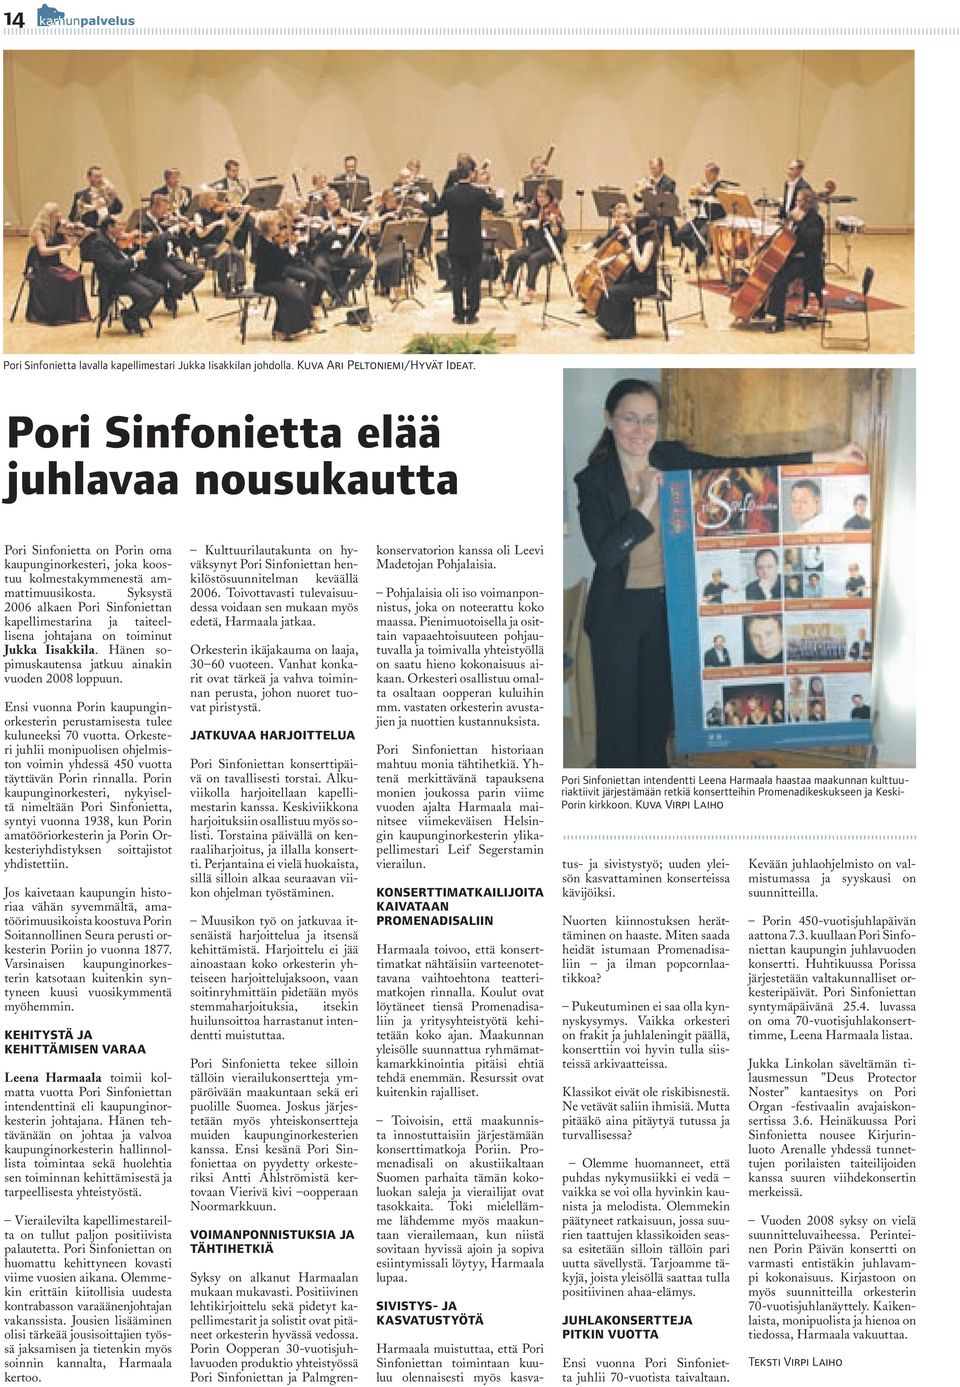 Syksystä 2006 alkaen Pori Sinfoniettan kapellimestarina ja taiteellisena johtajana on toiminut Jukka Iisakkila. Hänen sopimuskautensa jatkuu ainakin vuoden 2008 loppuun.